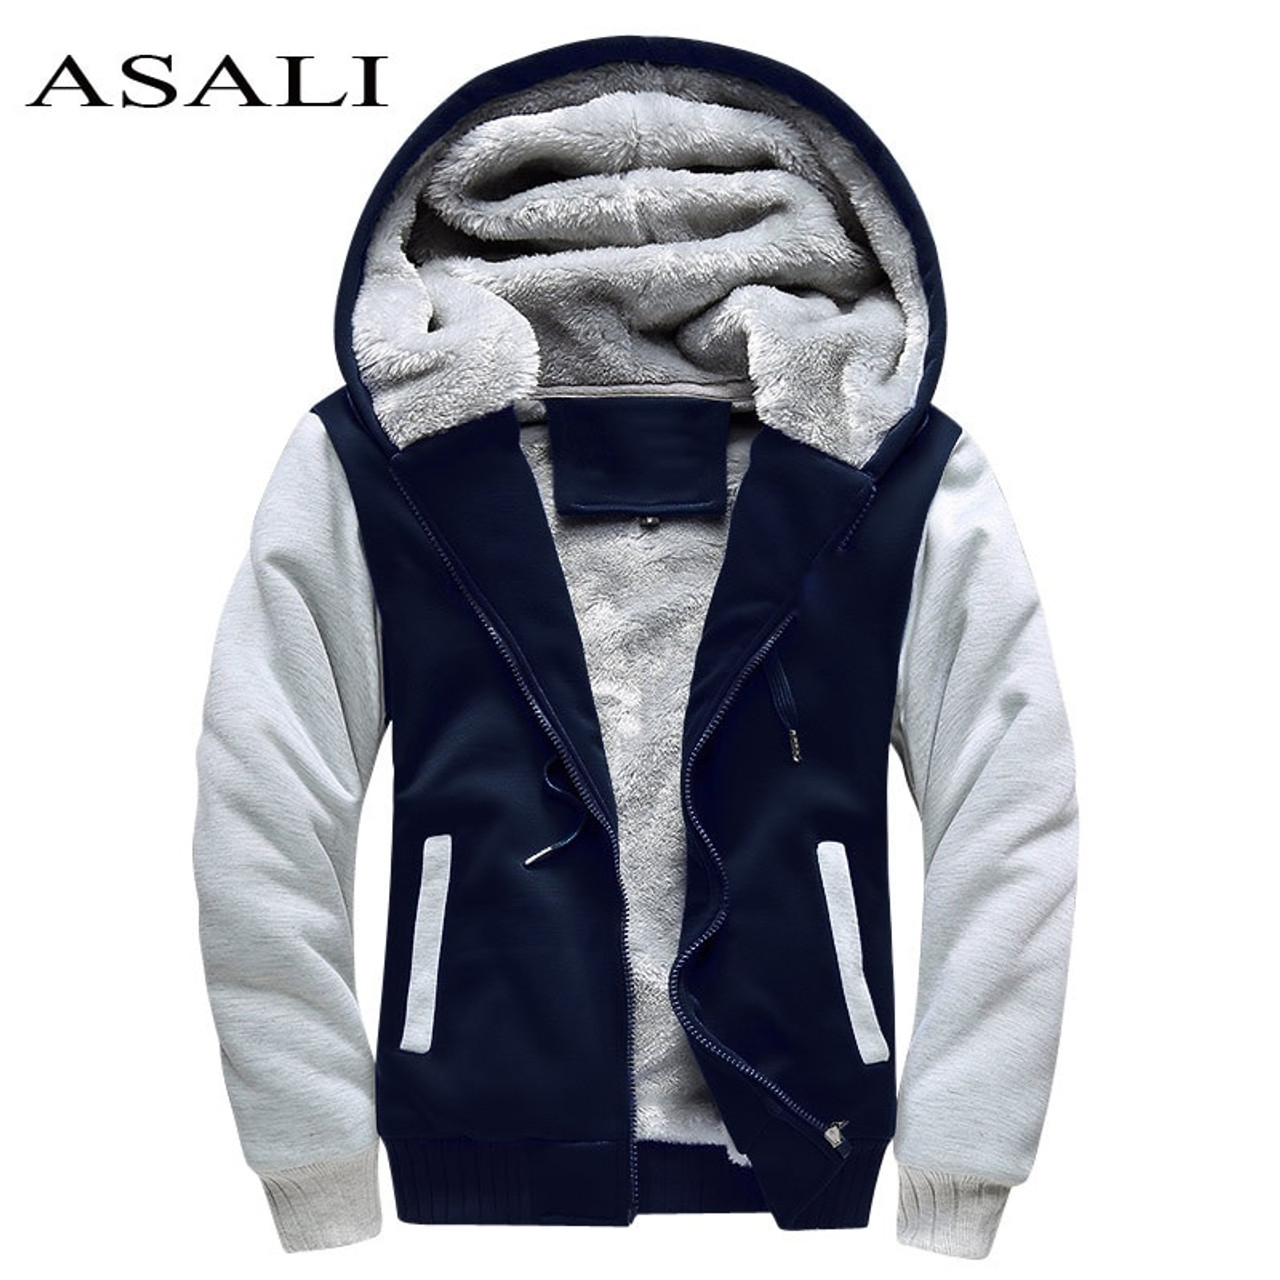 ASALI Bomber Jacket Men 2018 New Brand 